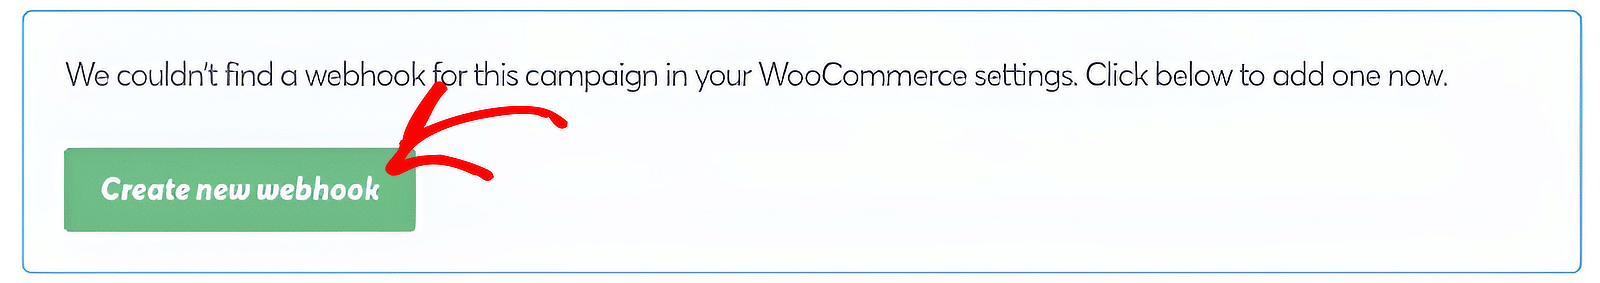 WooCommerce webhook